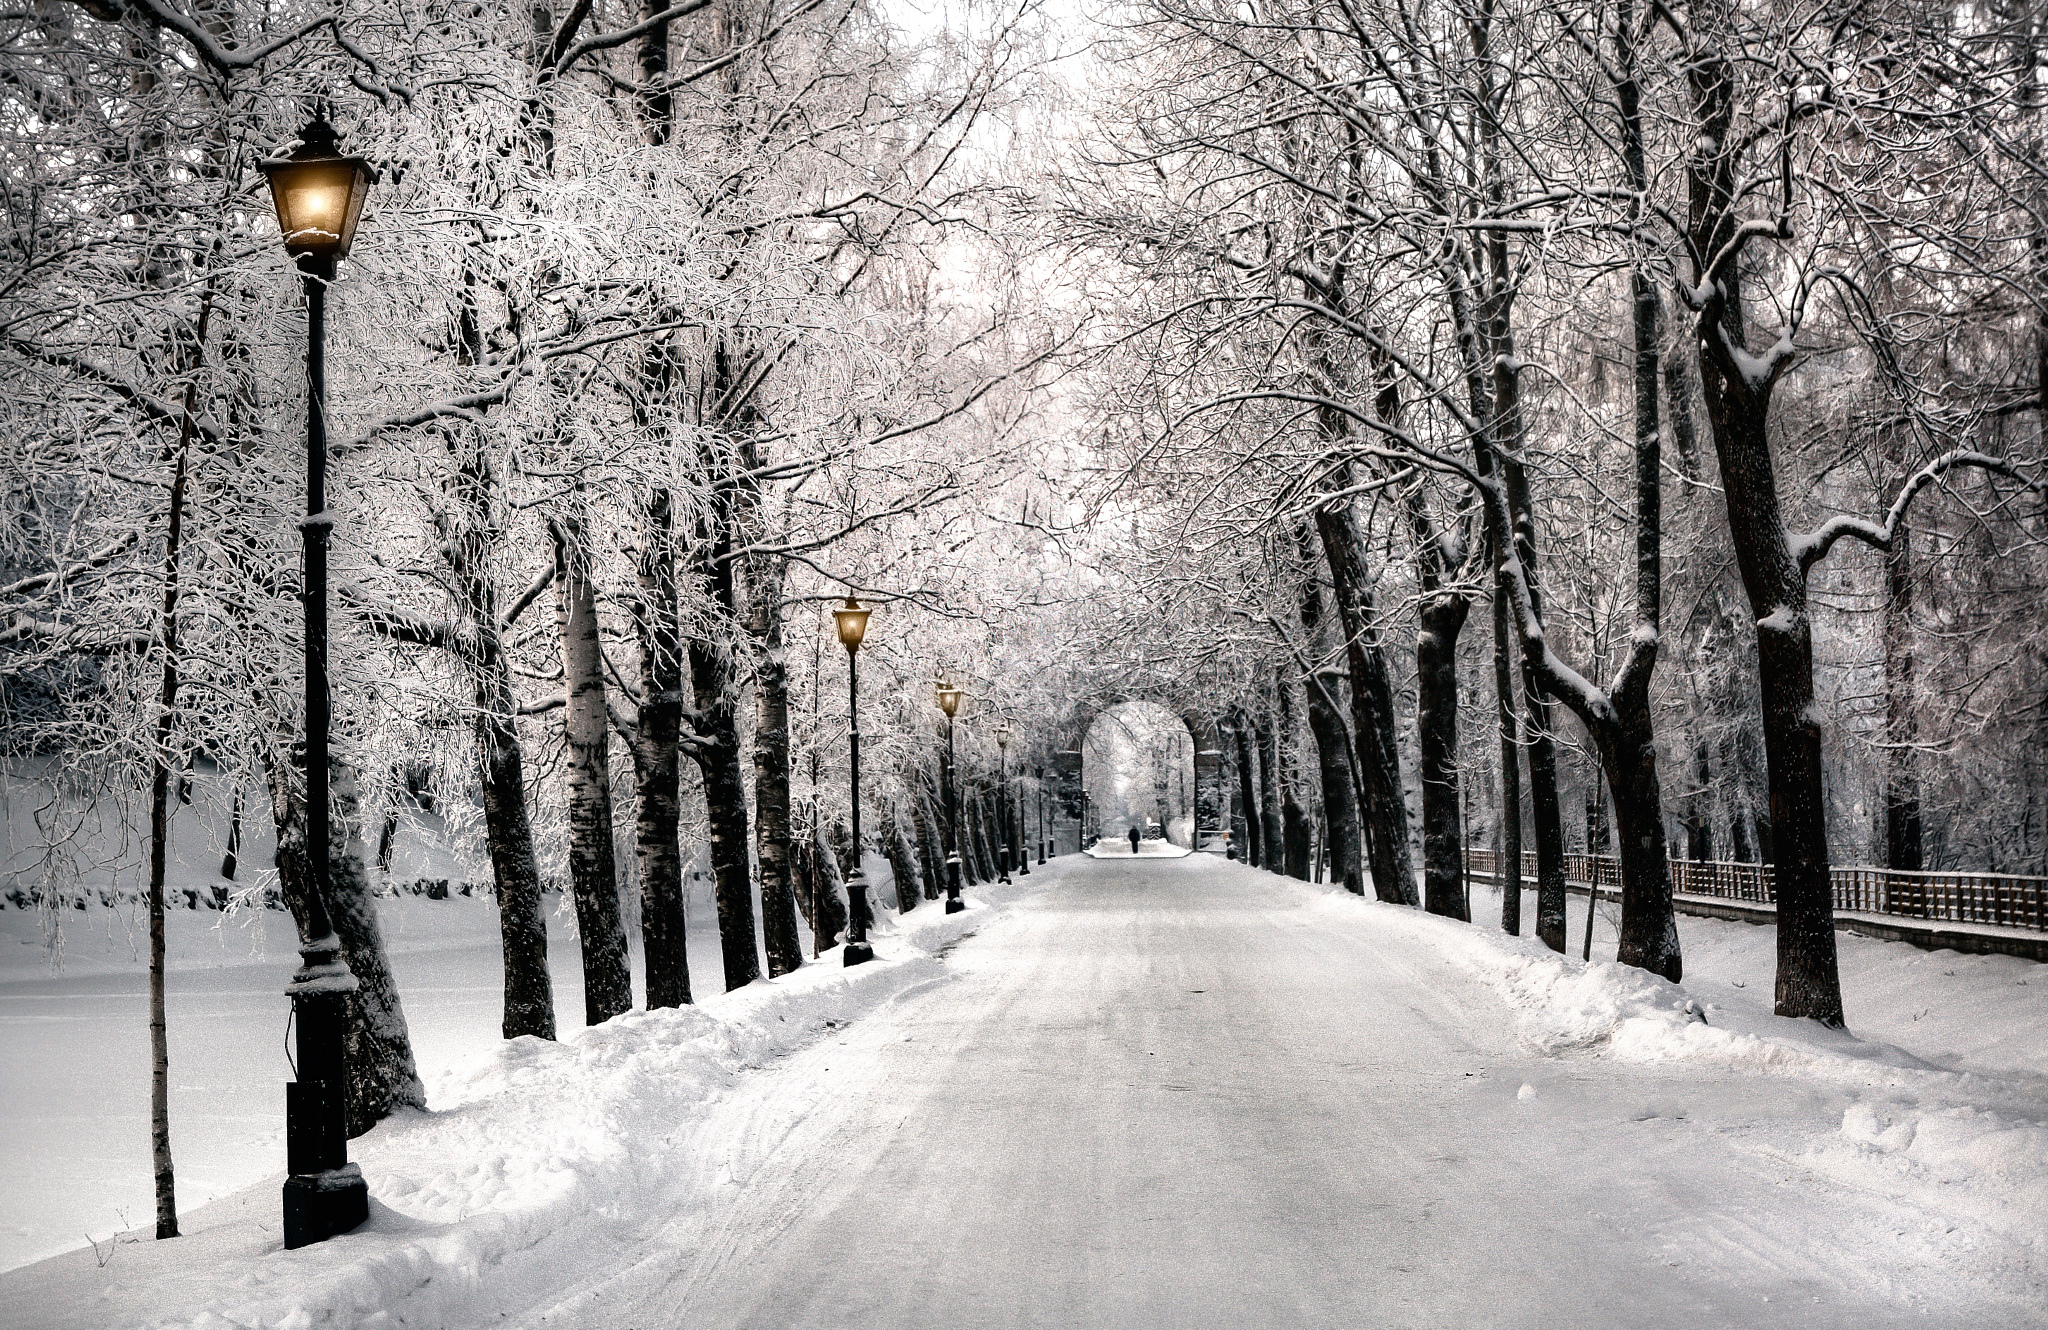 Скачать картинку Зима, Снег, Дорога, Парк, Фотографии, Обсаженный Деревьями в телефон бесплатно.